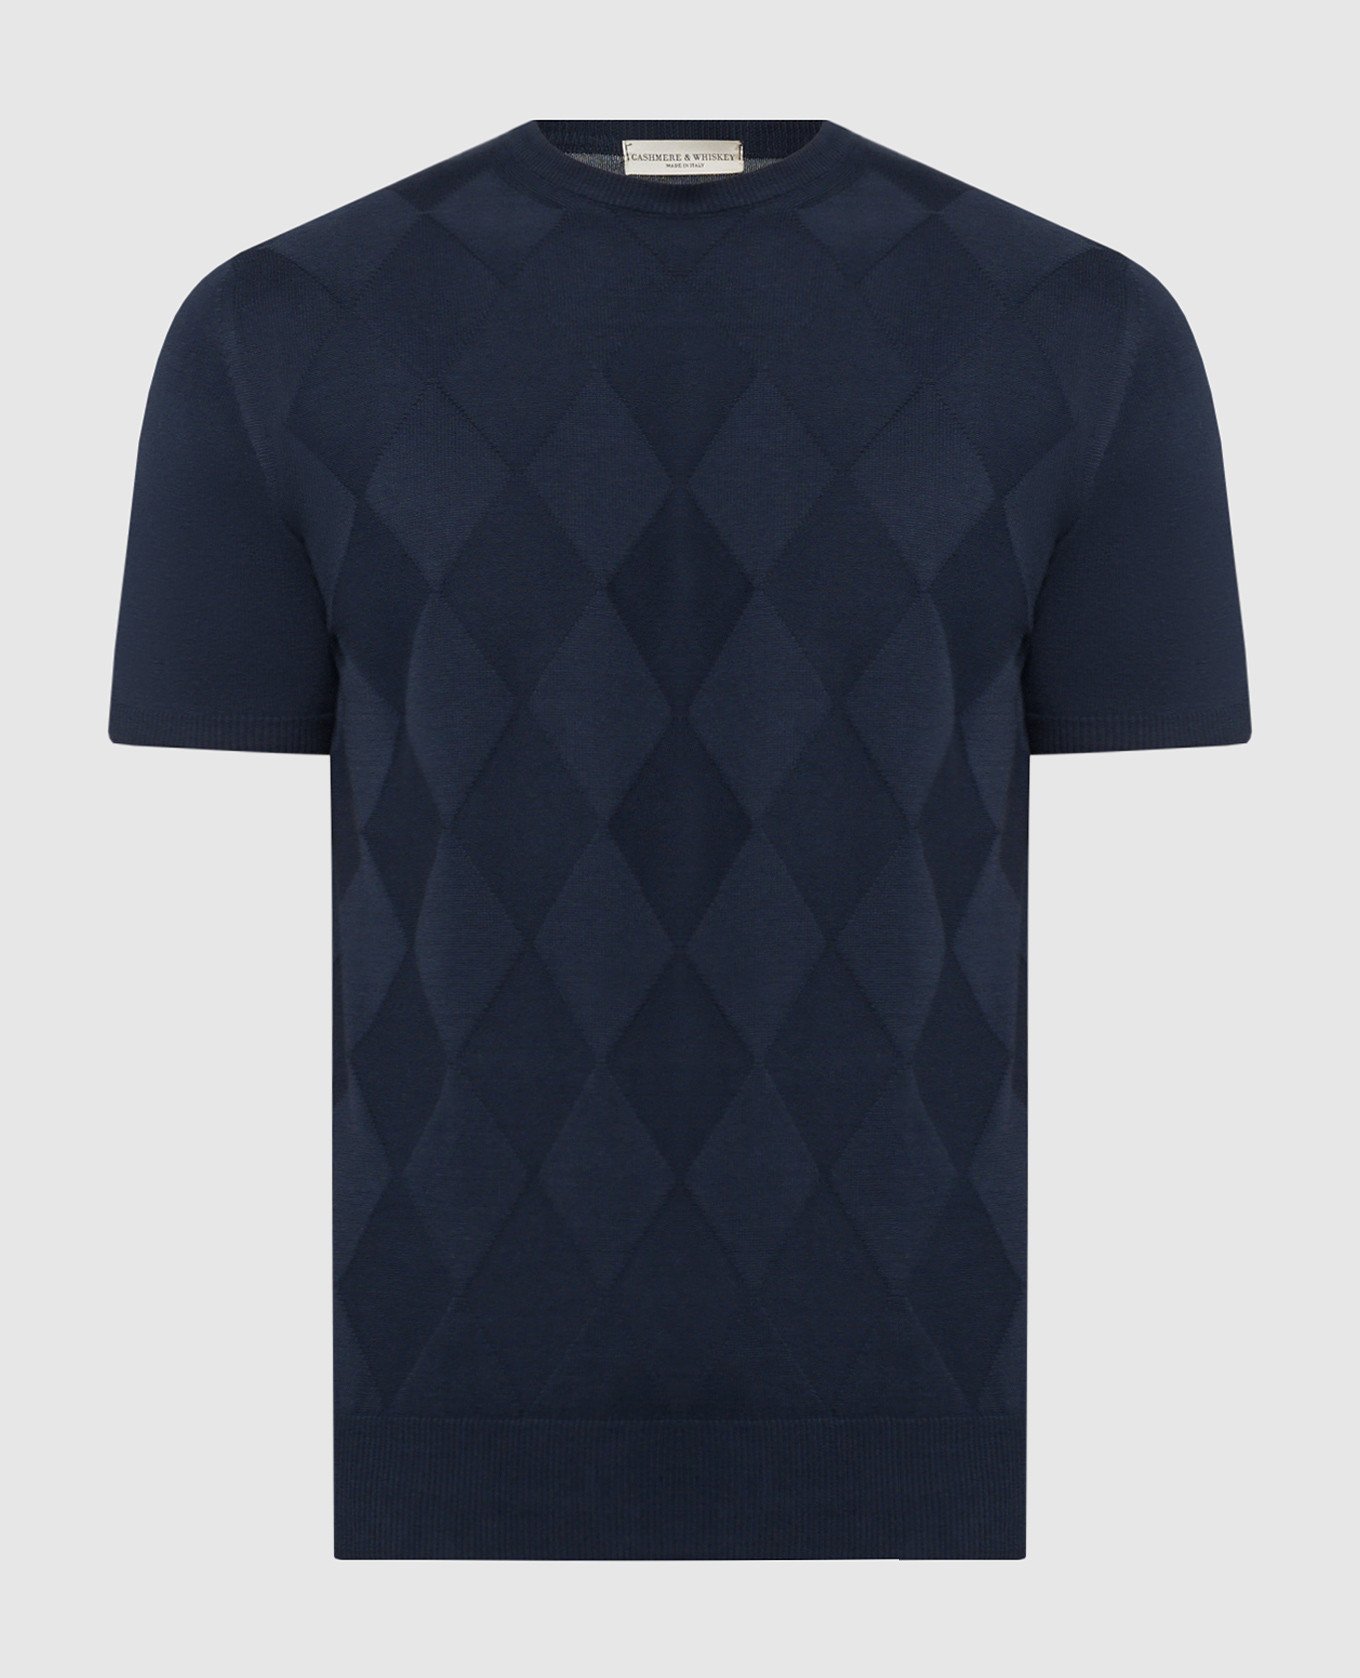 Синяя футболка в геометрический узор ткани.